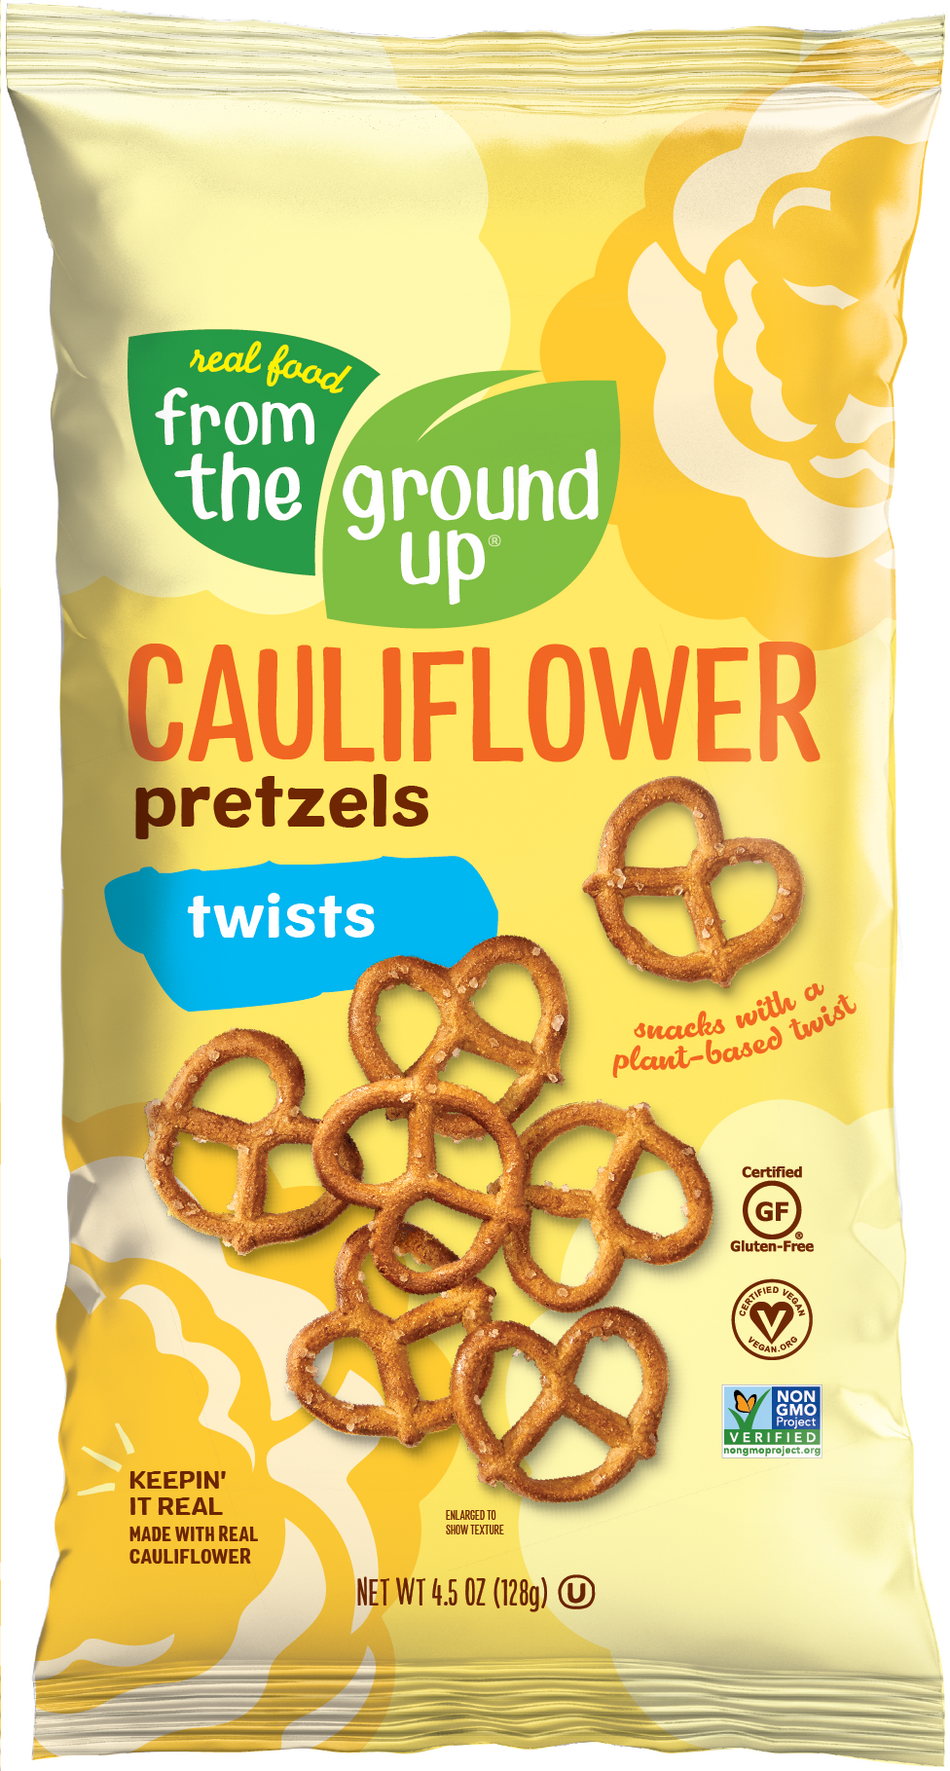 From the Ground Up Original Cauliflower Pretzel Twists